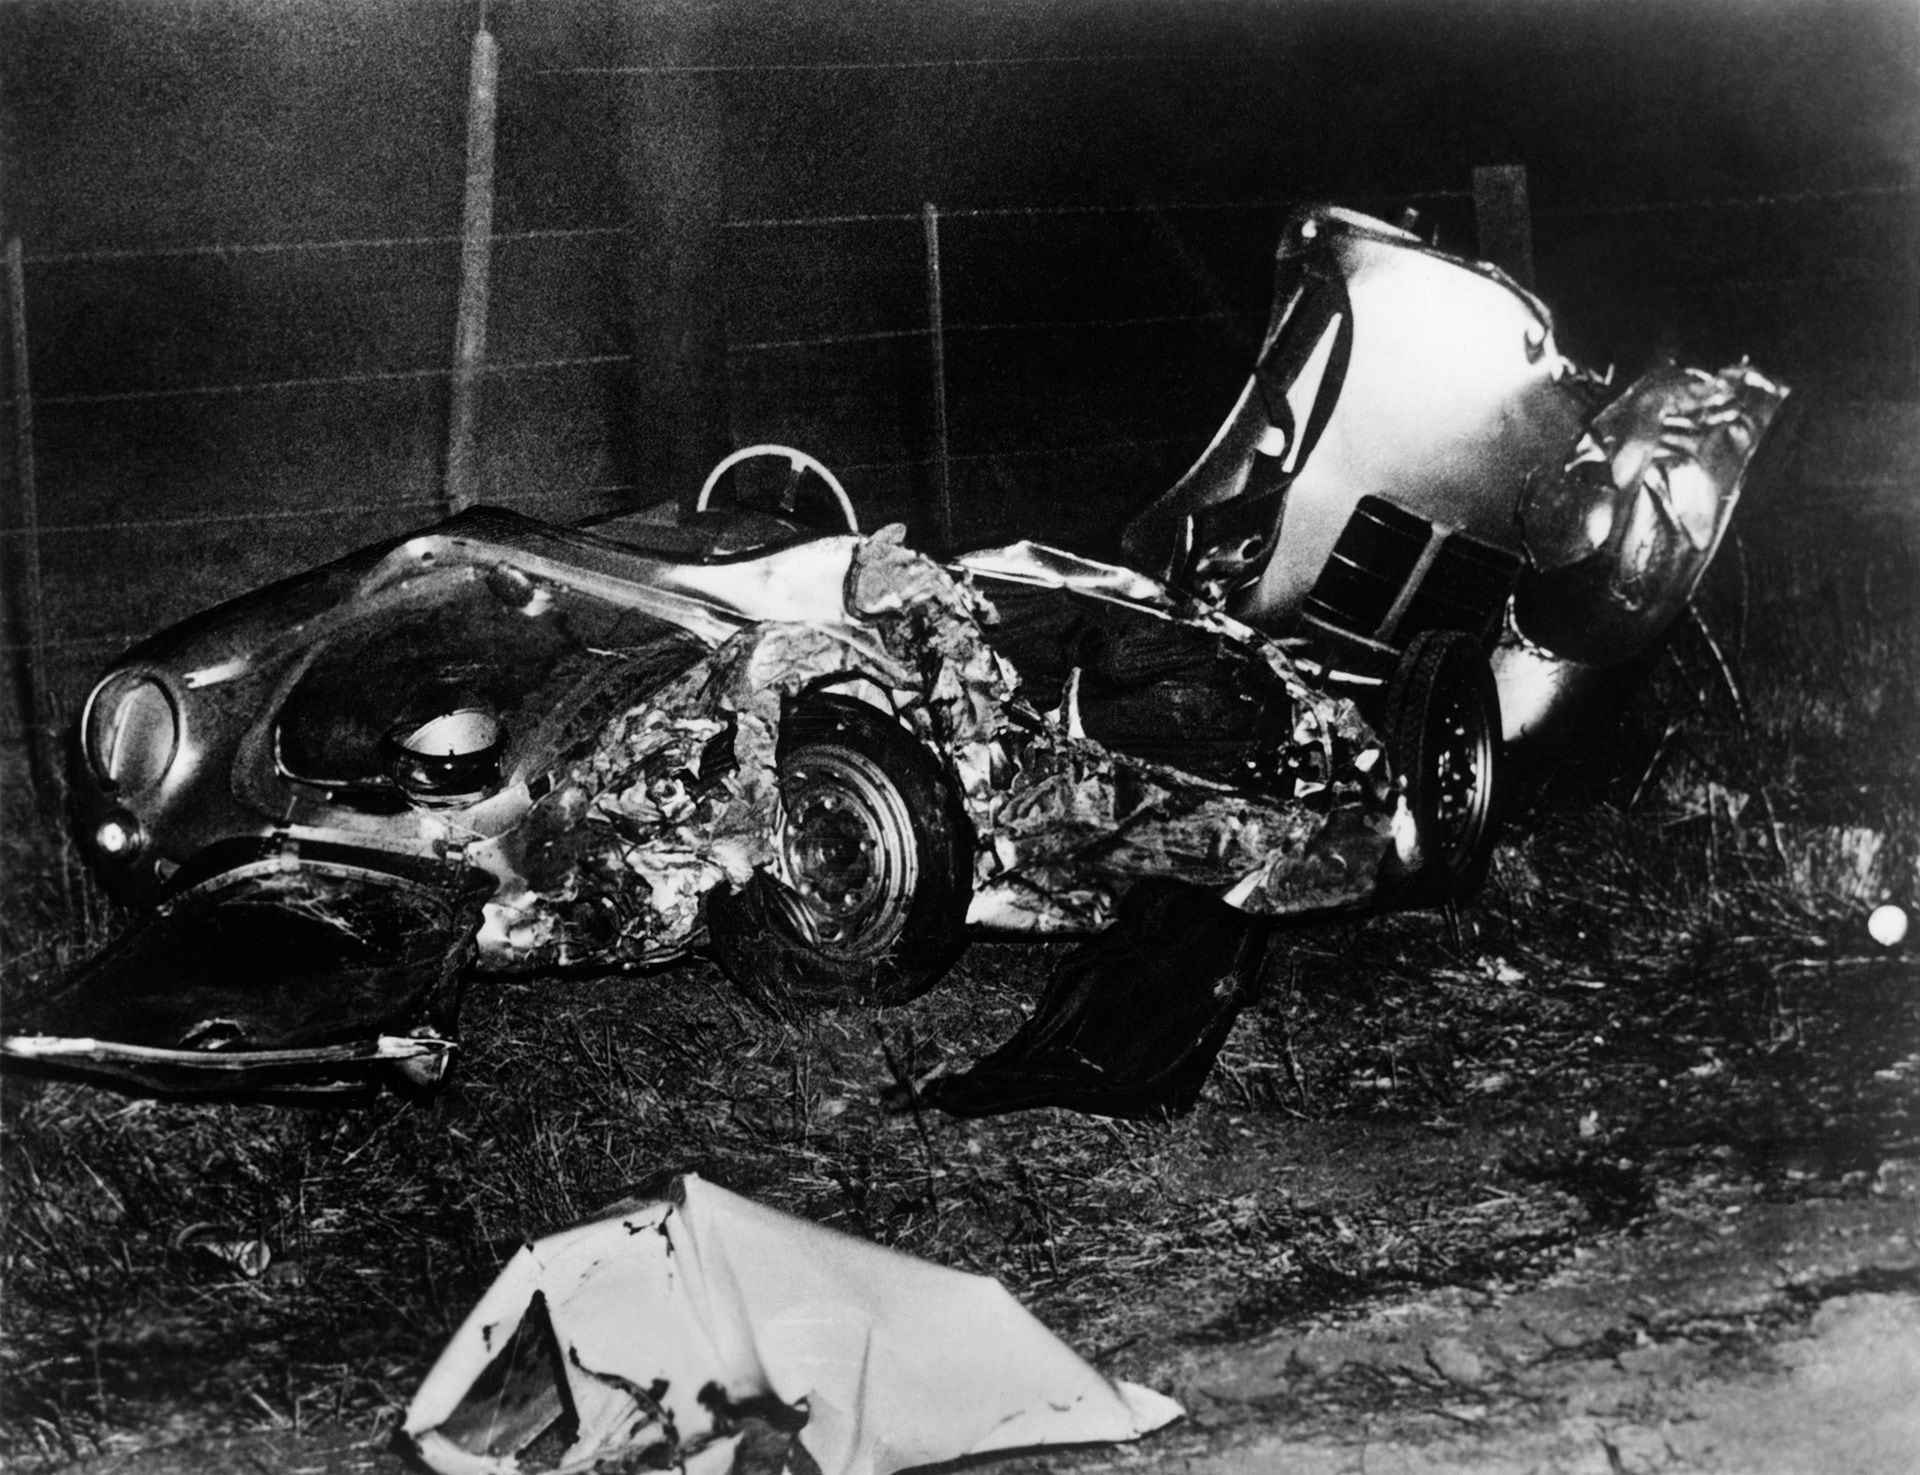 El Porsche en que viajaba y donde encontró su trágico final  (Michael Ochs/Archives/Getty Images)